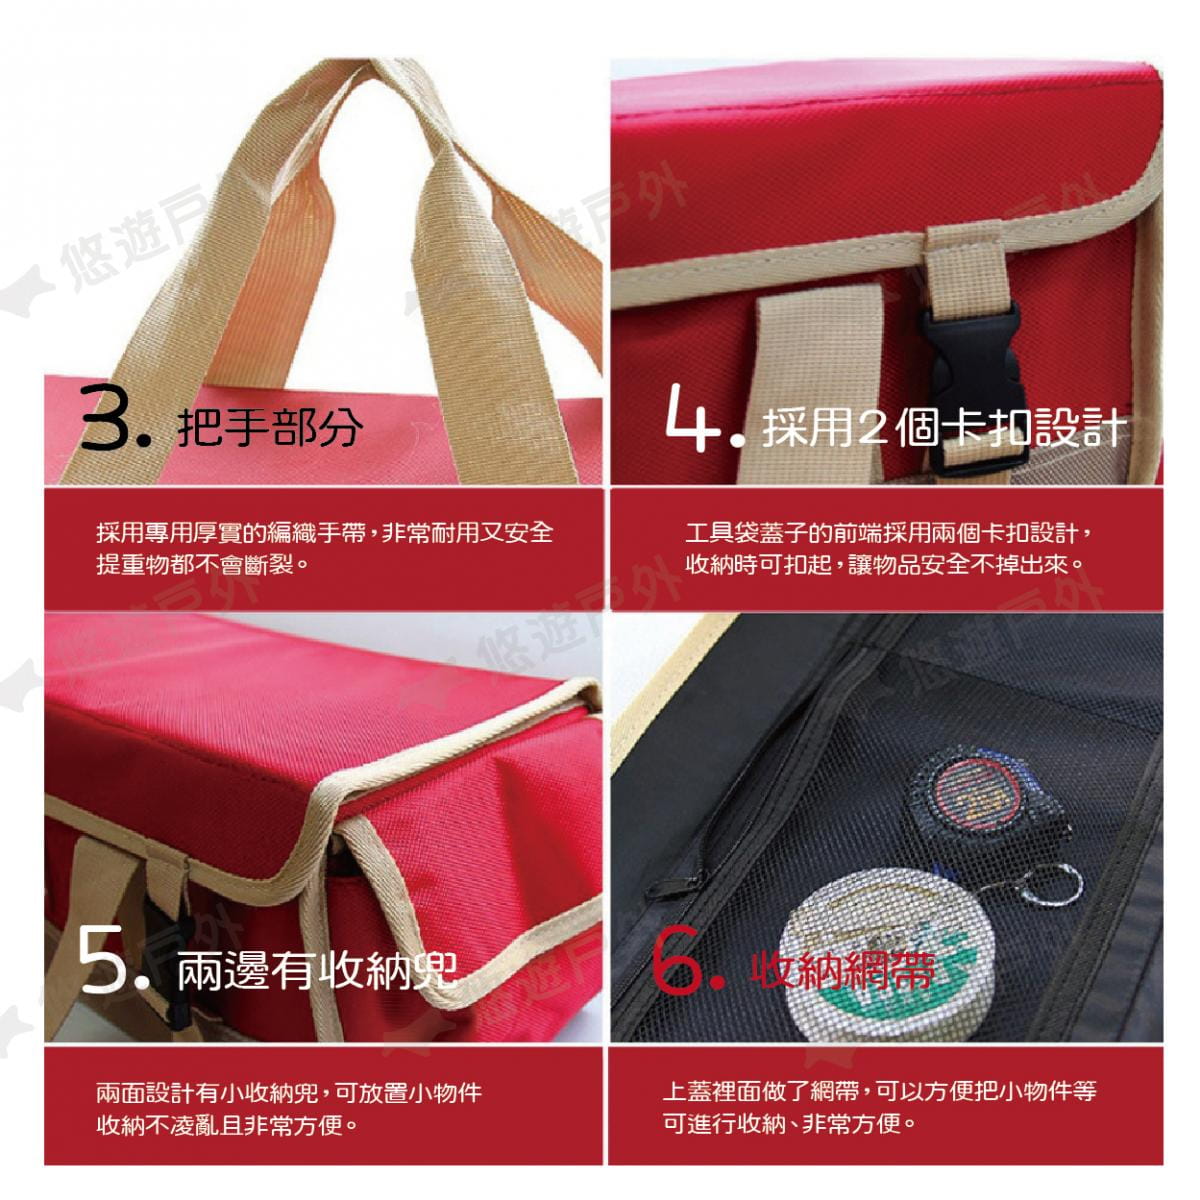 【CLS】韓國 牛津布大容量裝備工具袋 紅色 1680D 牛津布 裝備袋 工具包 工具袋 居家 露營 3